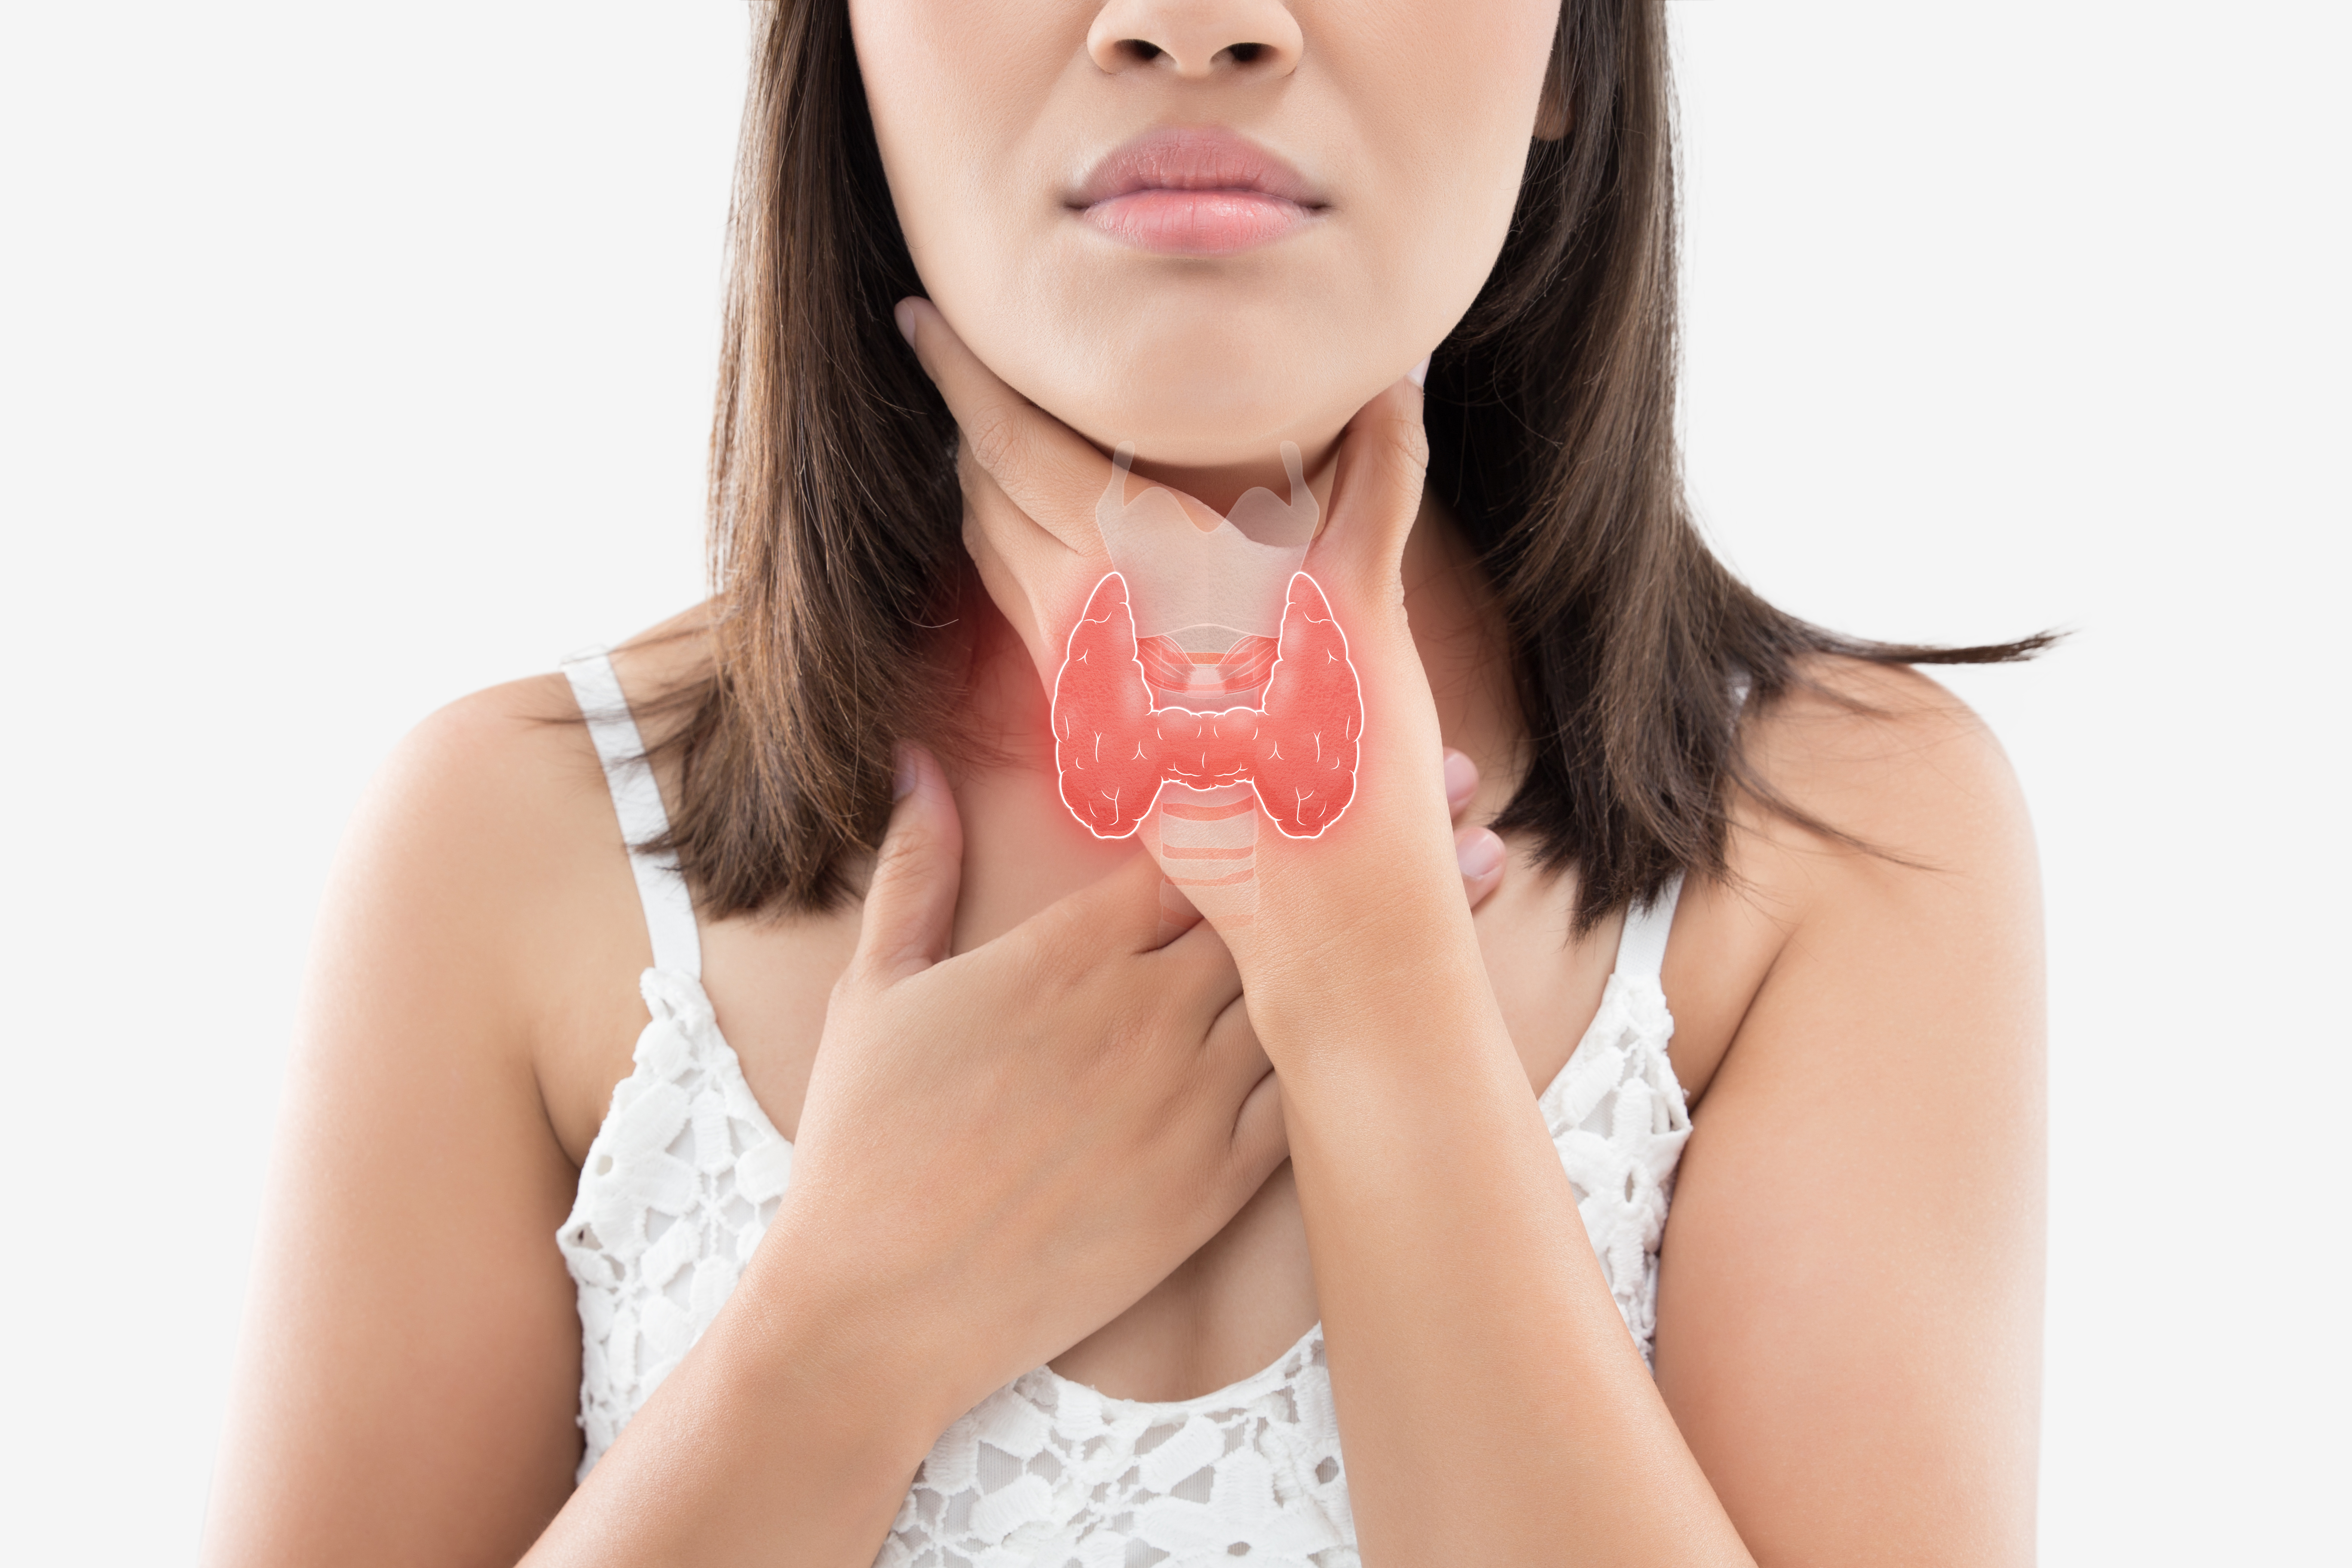 К пор сток. Thyroid щитовидная железа. Эндокринология щитовидная. Shitovidnoe Jeleza.